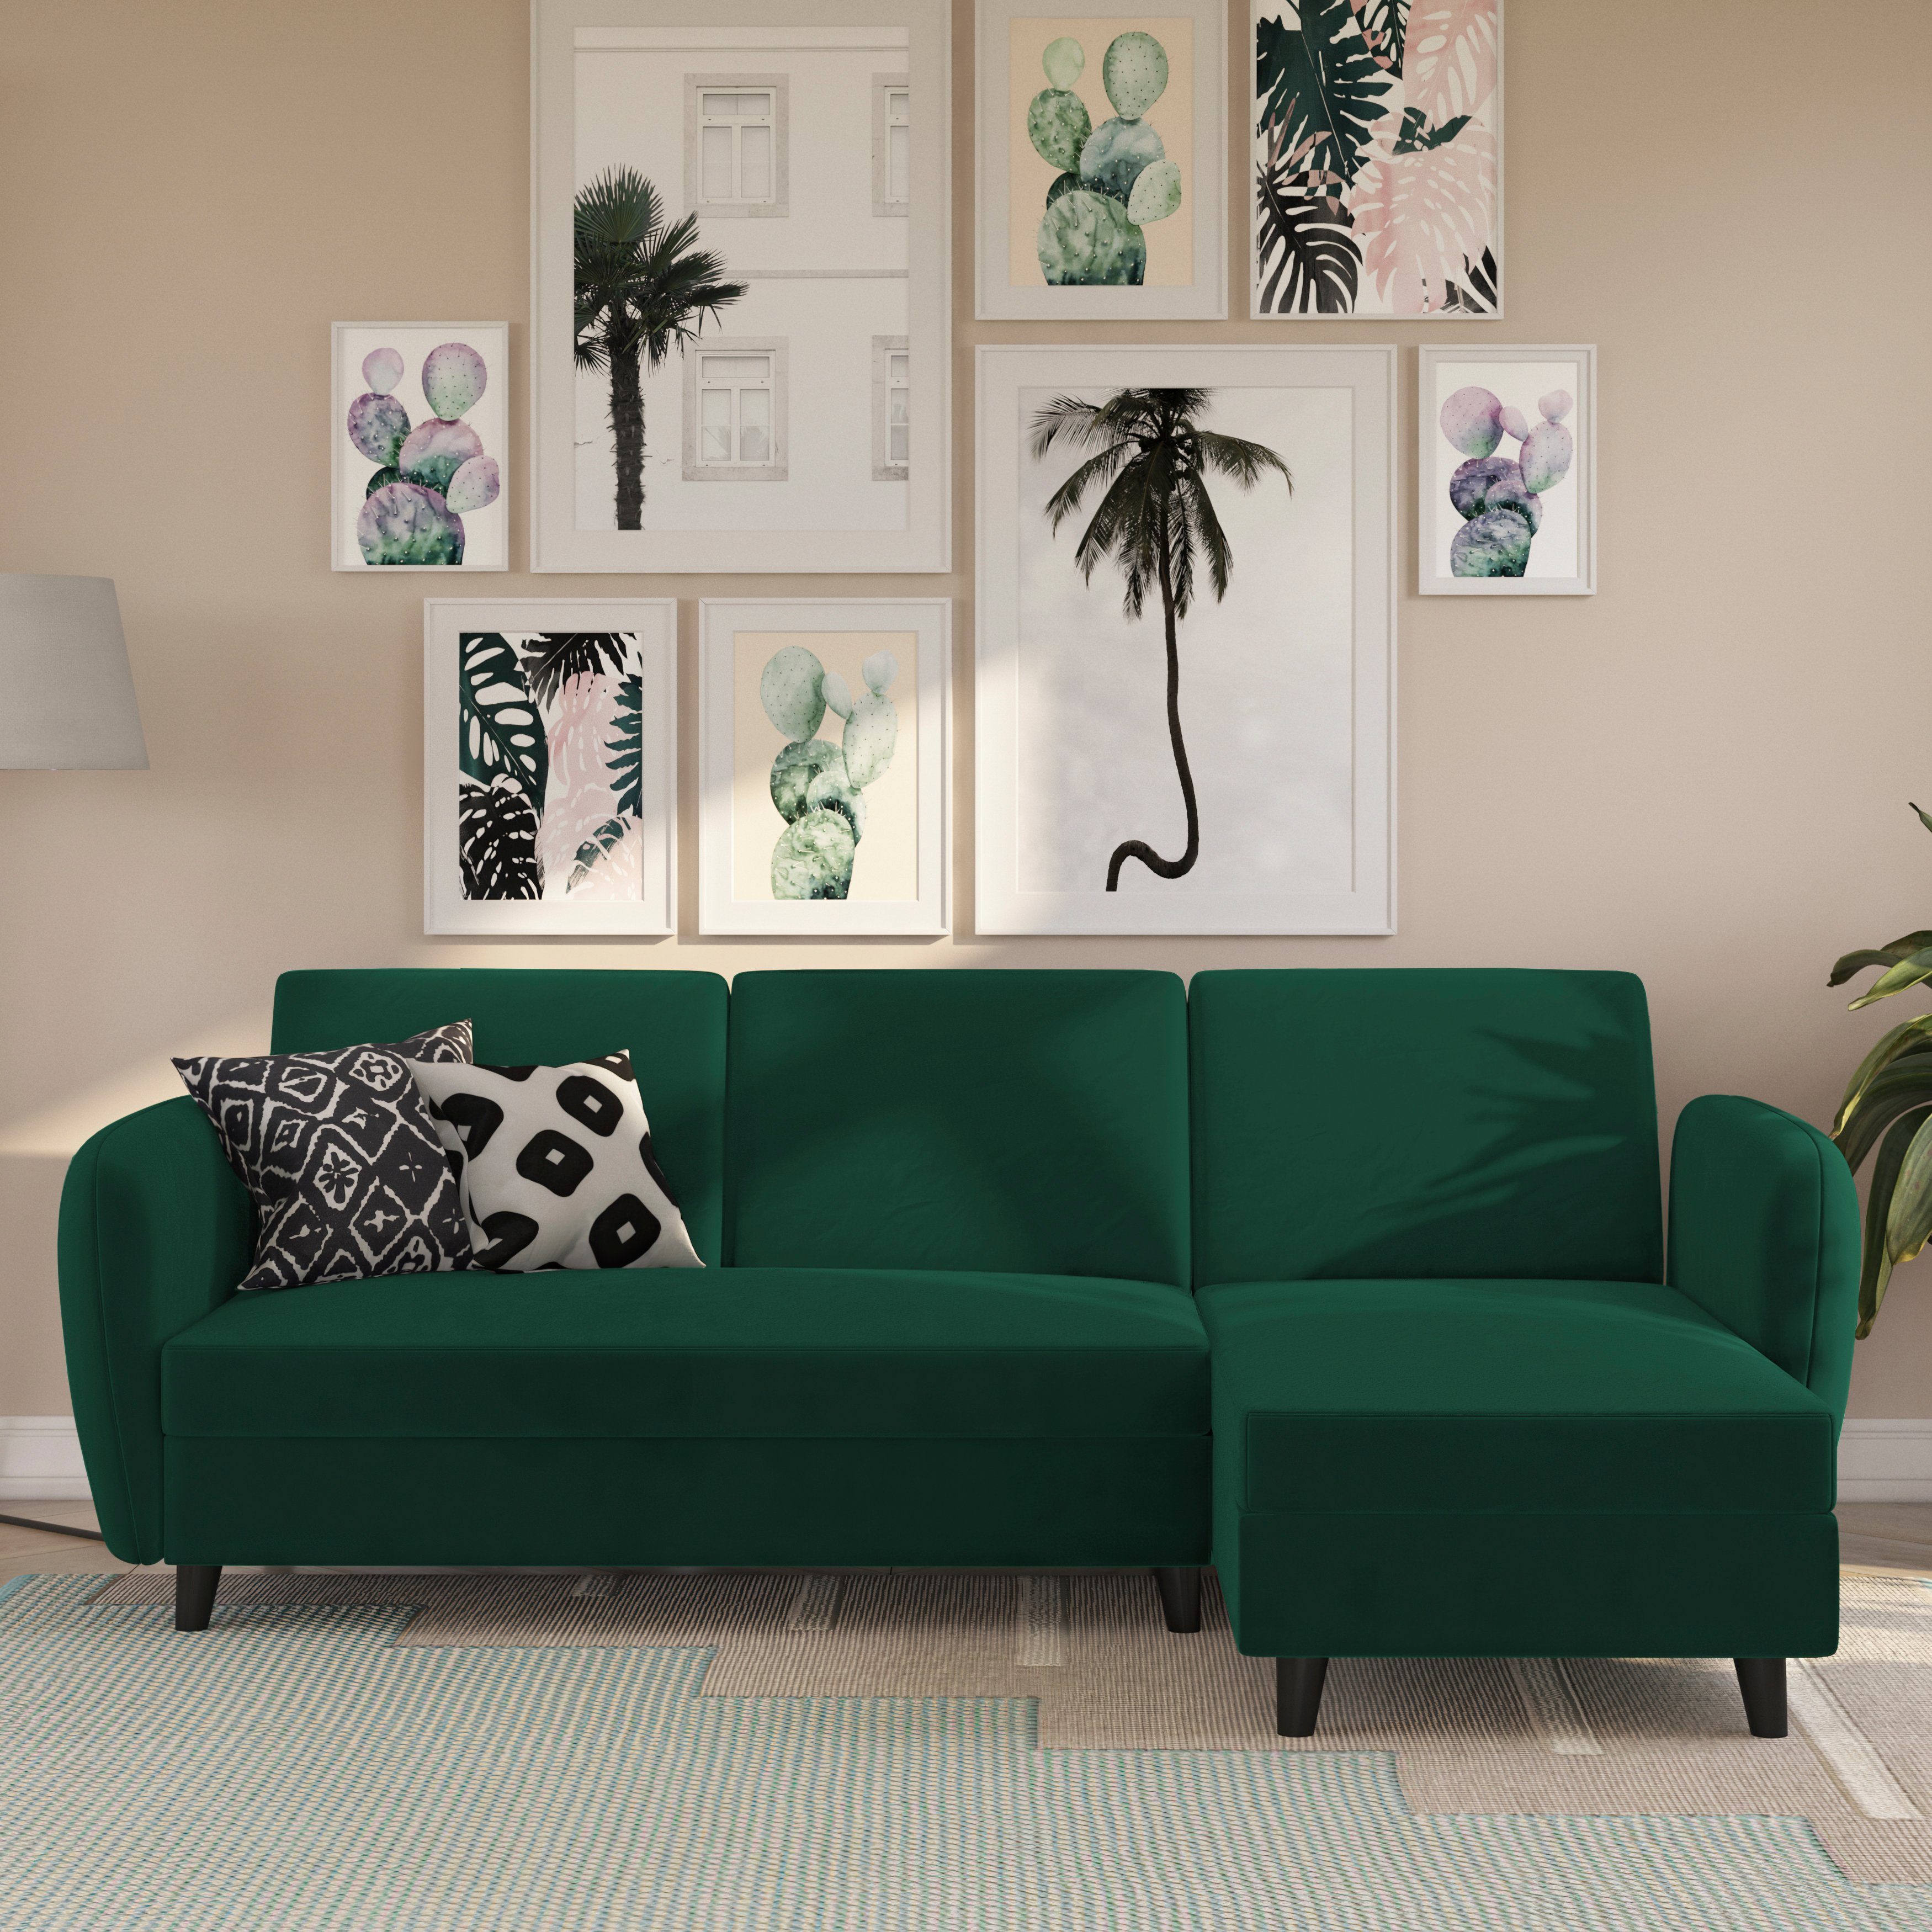 Dorel Home Ecksofa Perry, Rückenlehne, verschiedene Farbvarianten, Sitzhöhe 43 cm, Breite 219 cm dunkelgrün